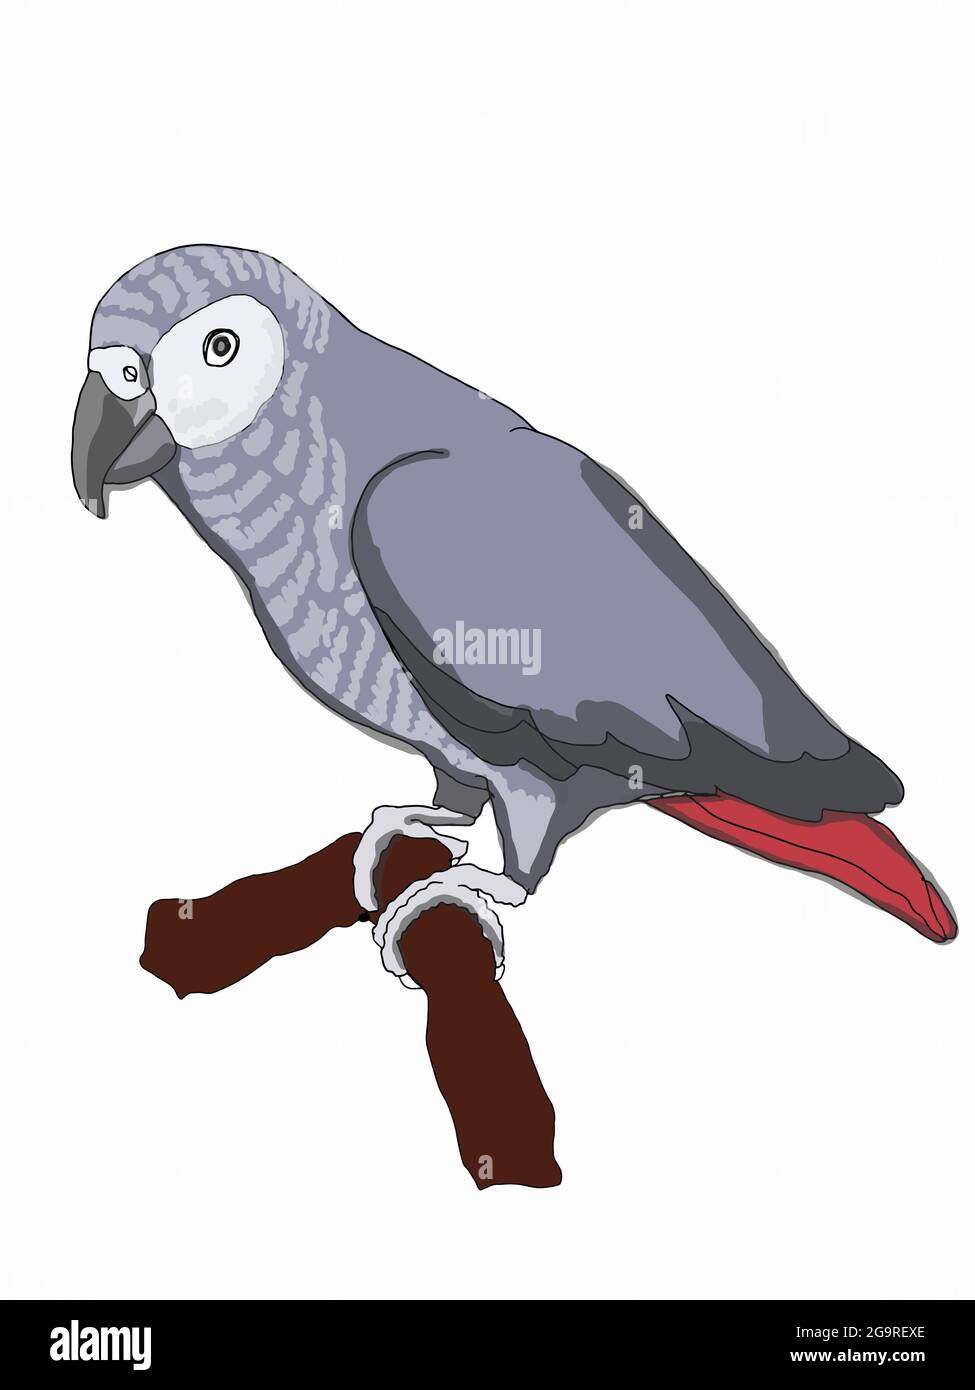 Perroquet gris, jaco, schéma d'illustration Banque D'Images